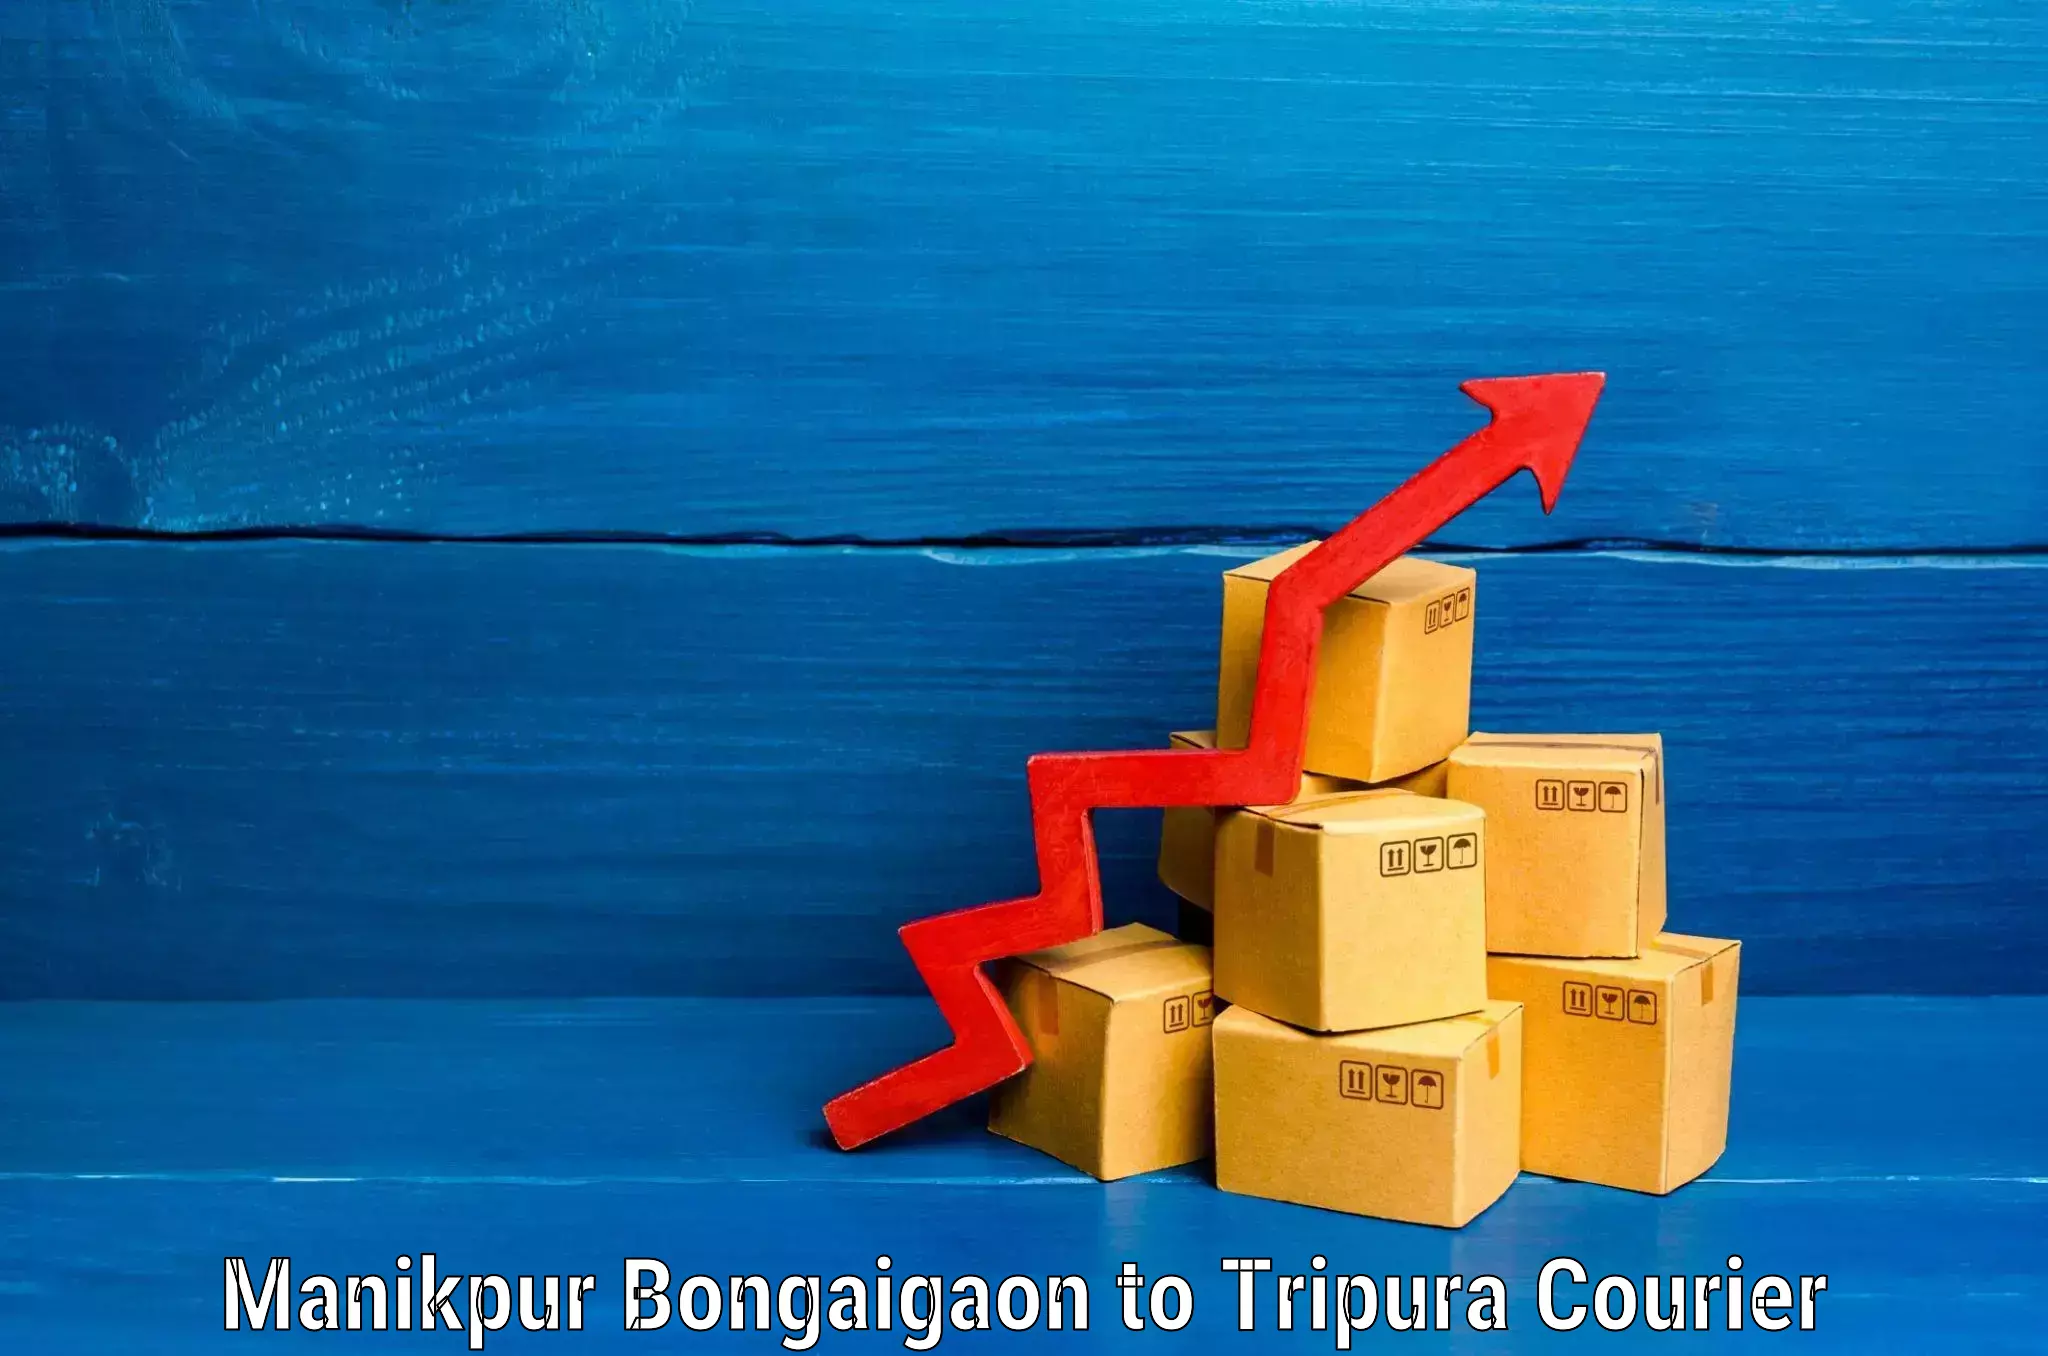 Luggage transit service Manikpur Bongaigaon to Amarpur